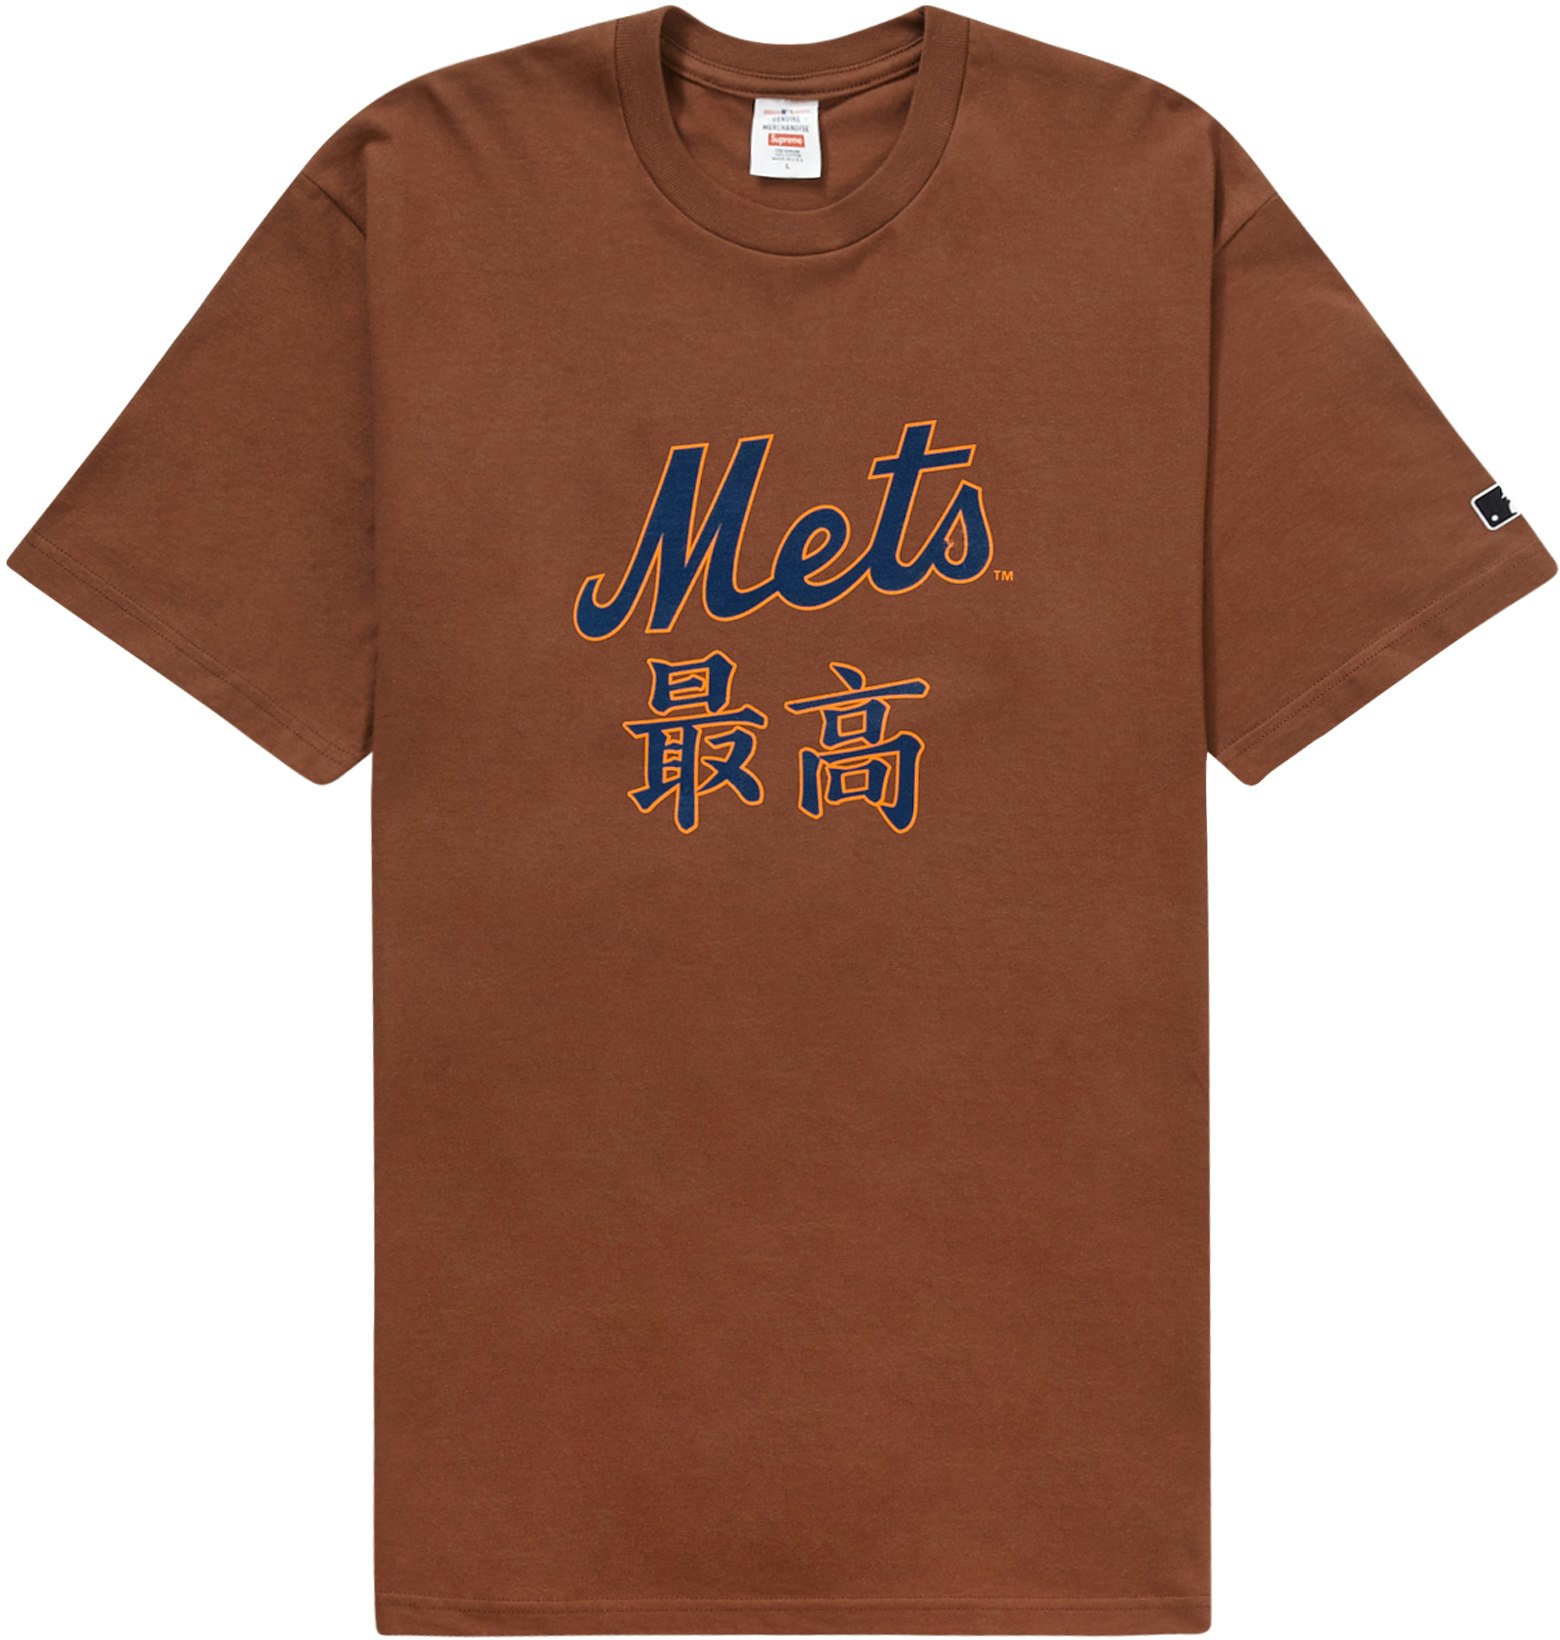 Supreme MLB New York Mets Kanji Teams Tee Brown - Novelship